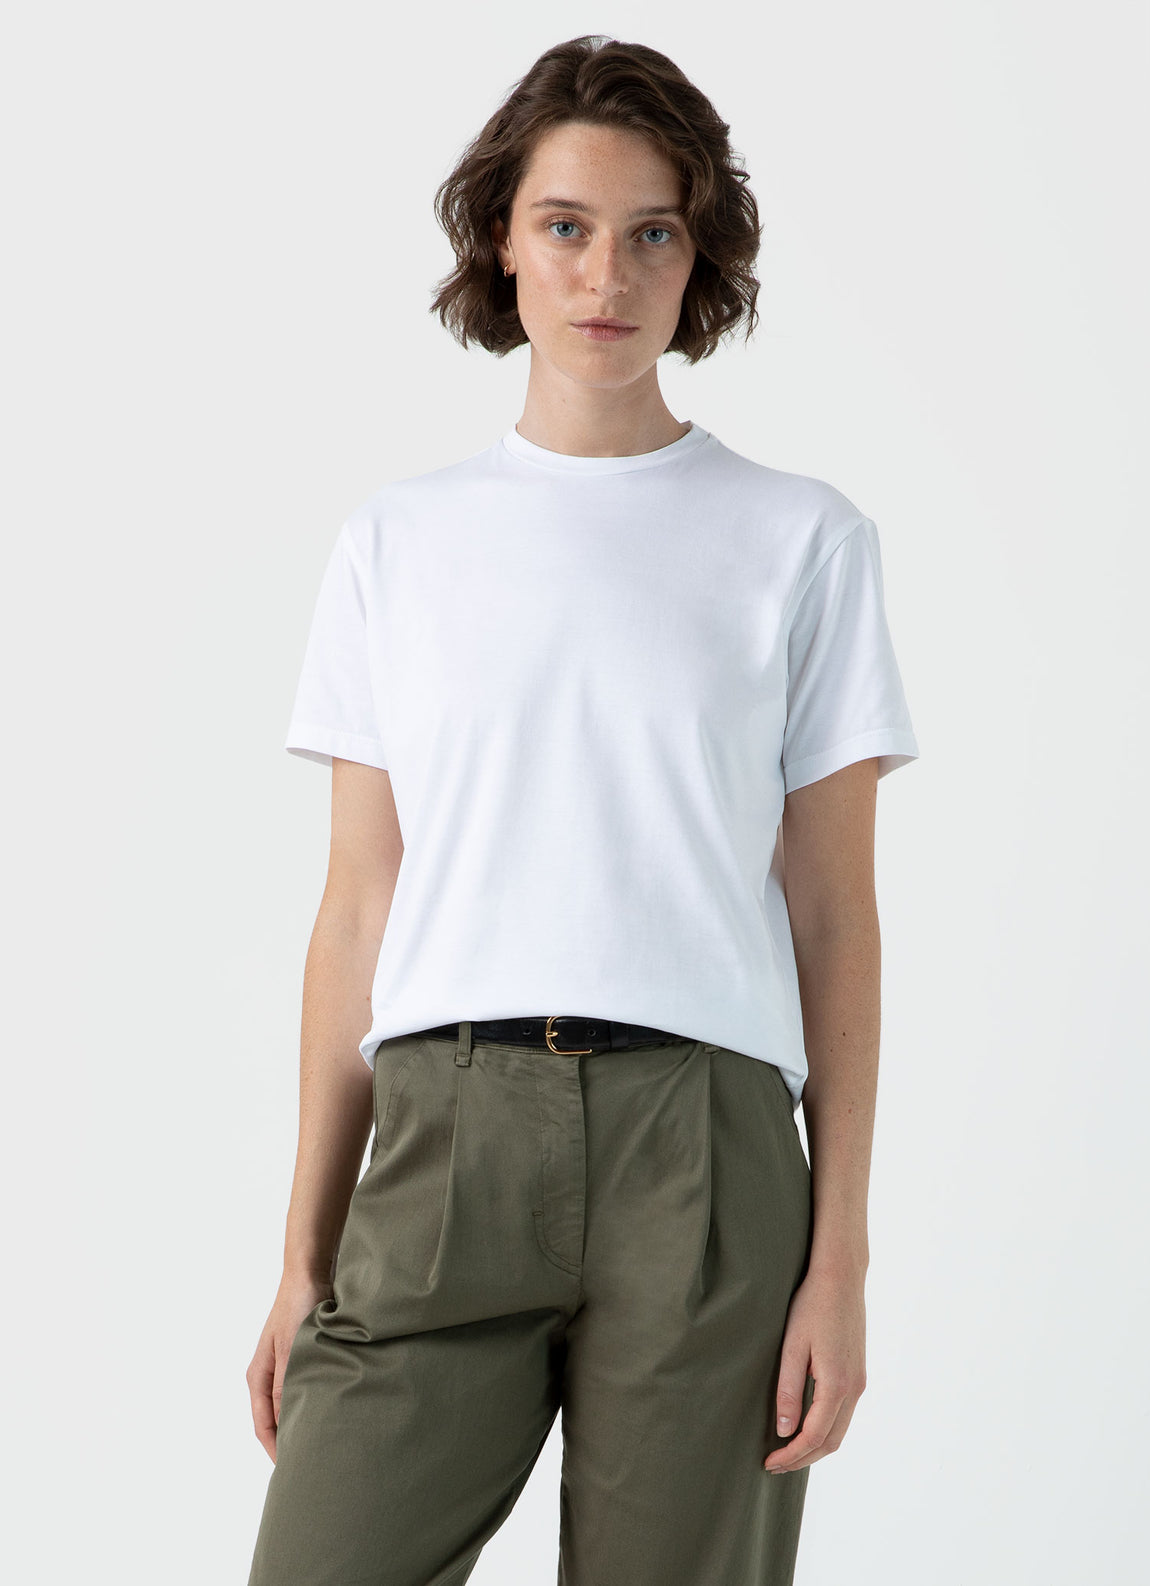 Women's Boy Fit T-shirt in White | Sunspel